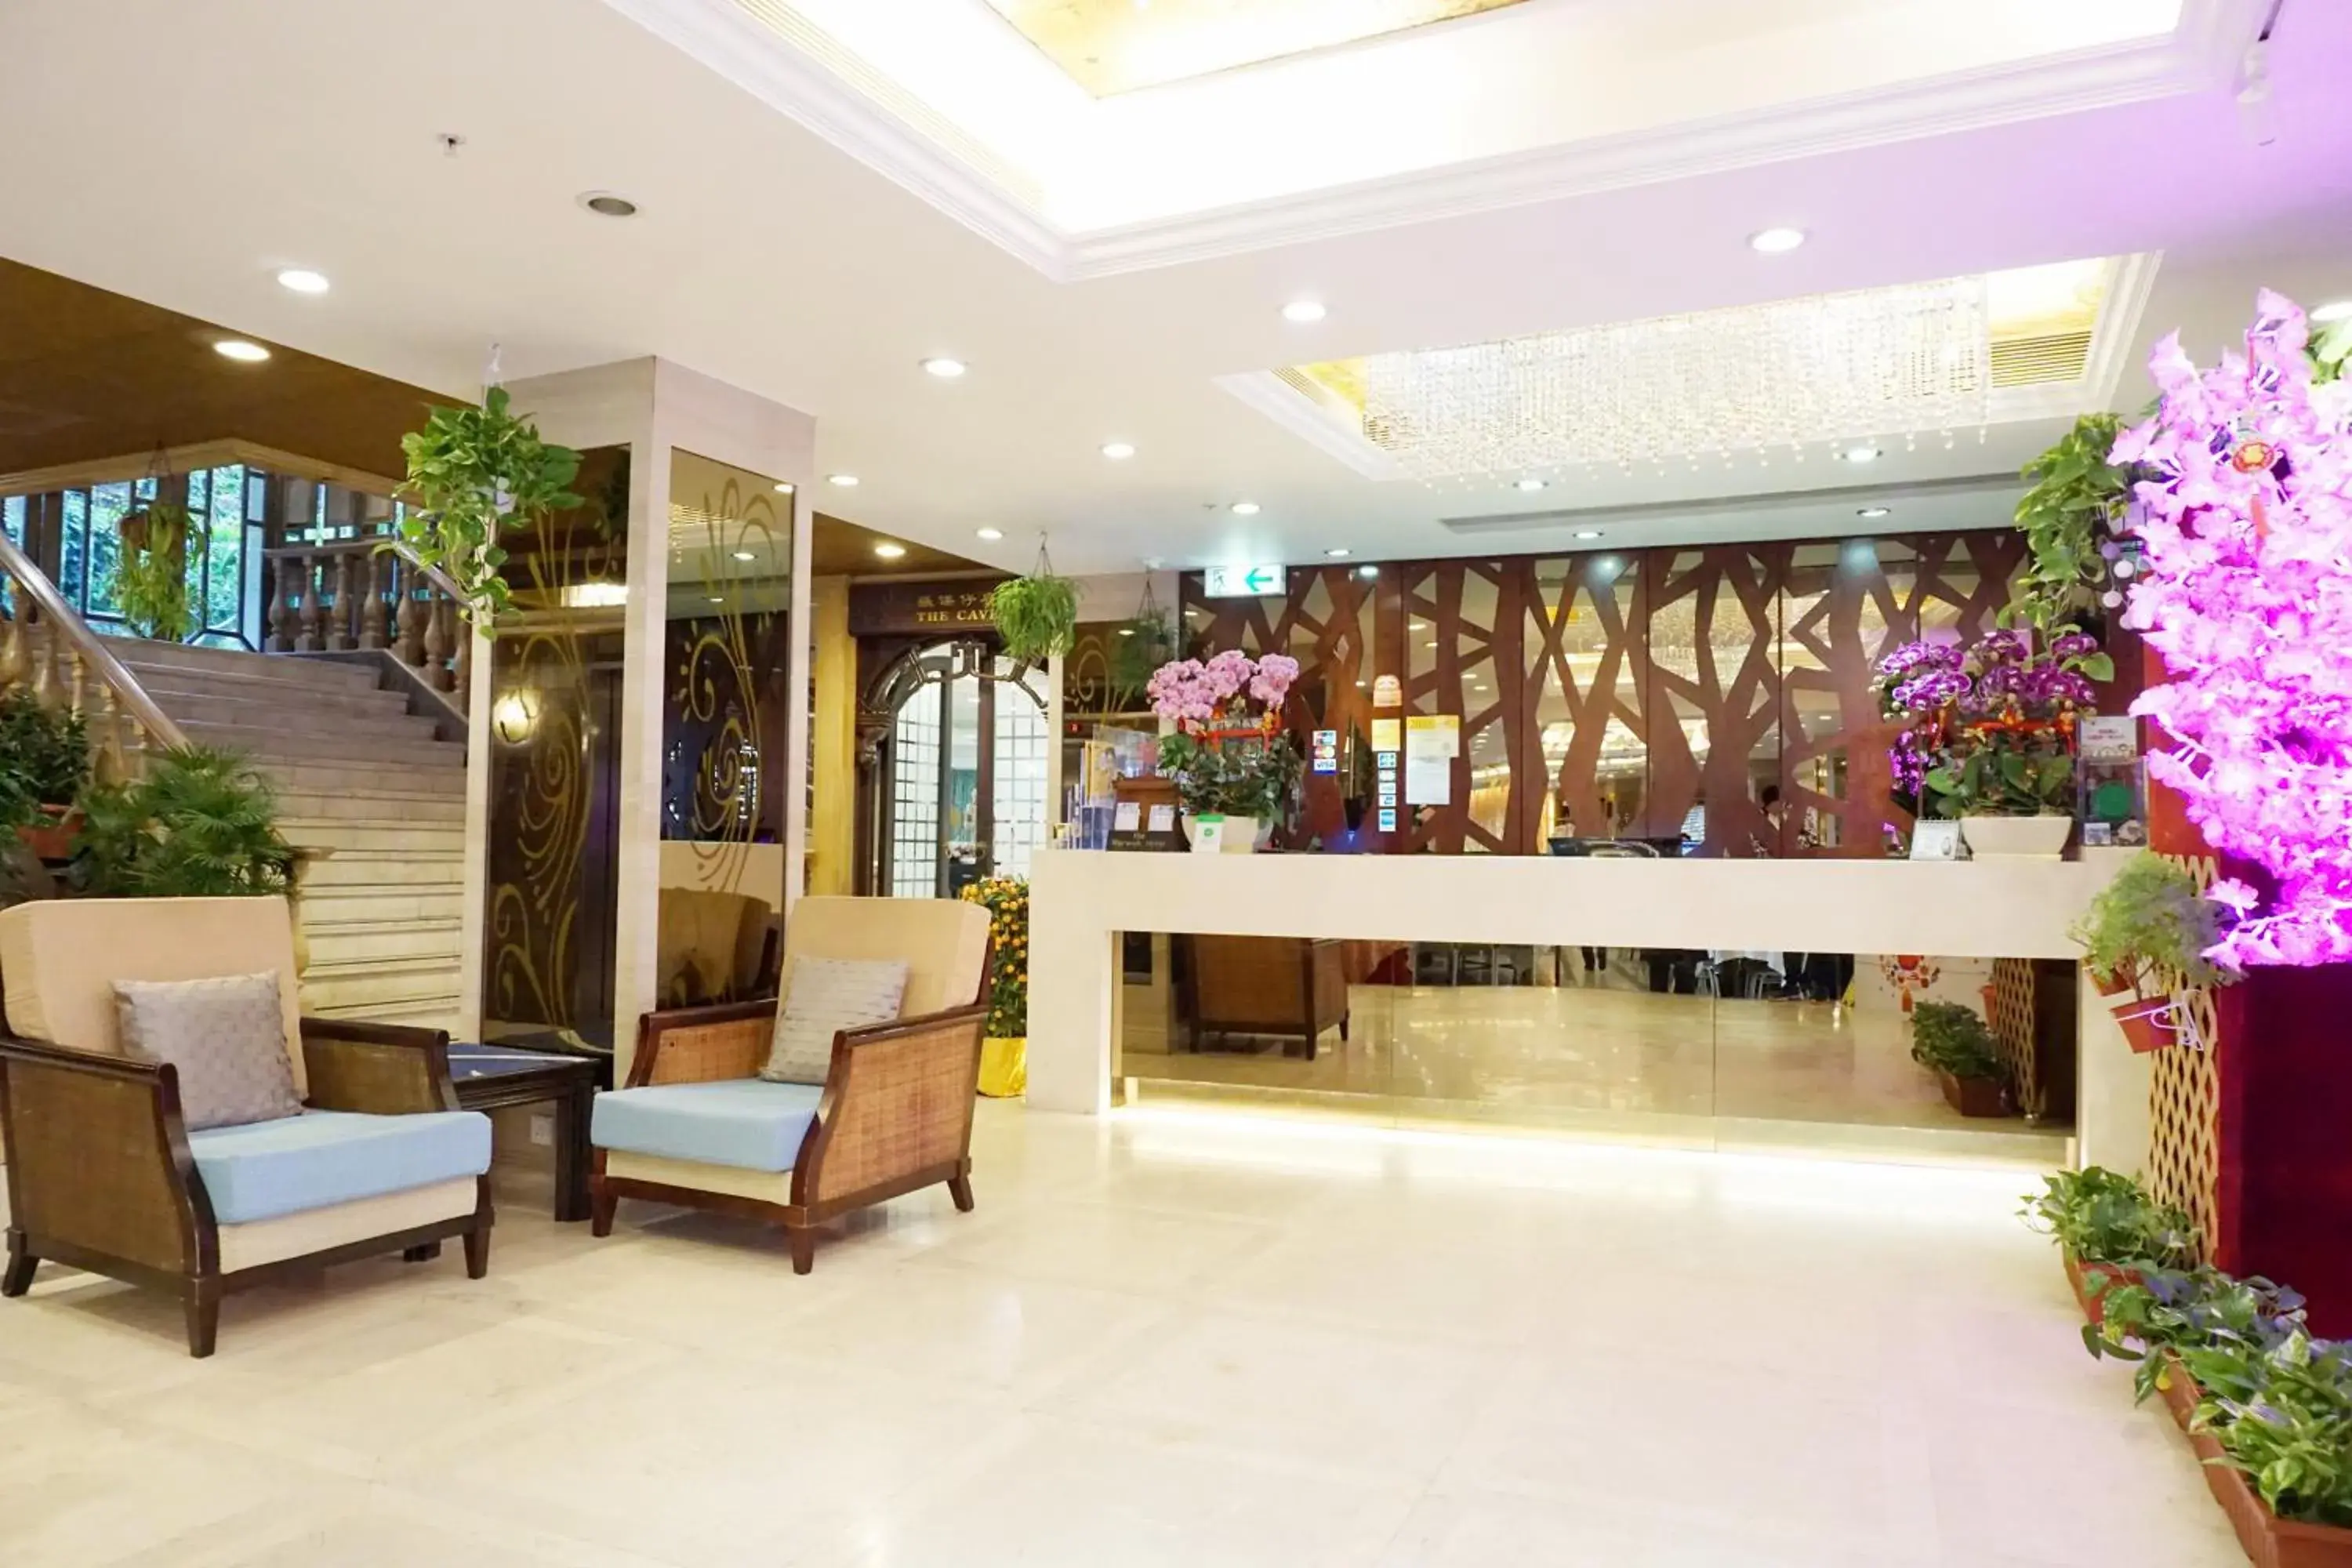 Lobby or reception, Lobby/Reception in Warwick Hotel Cheung Chau